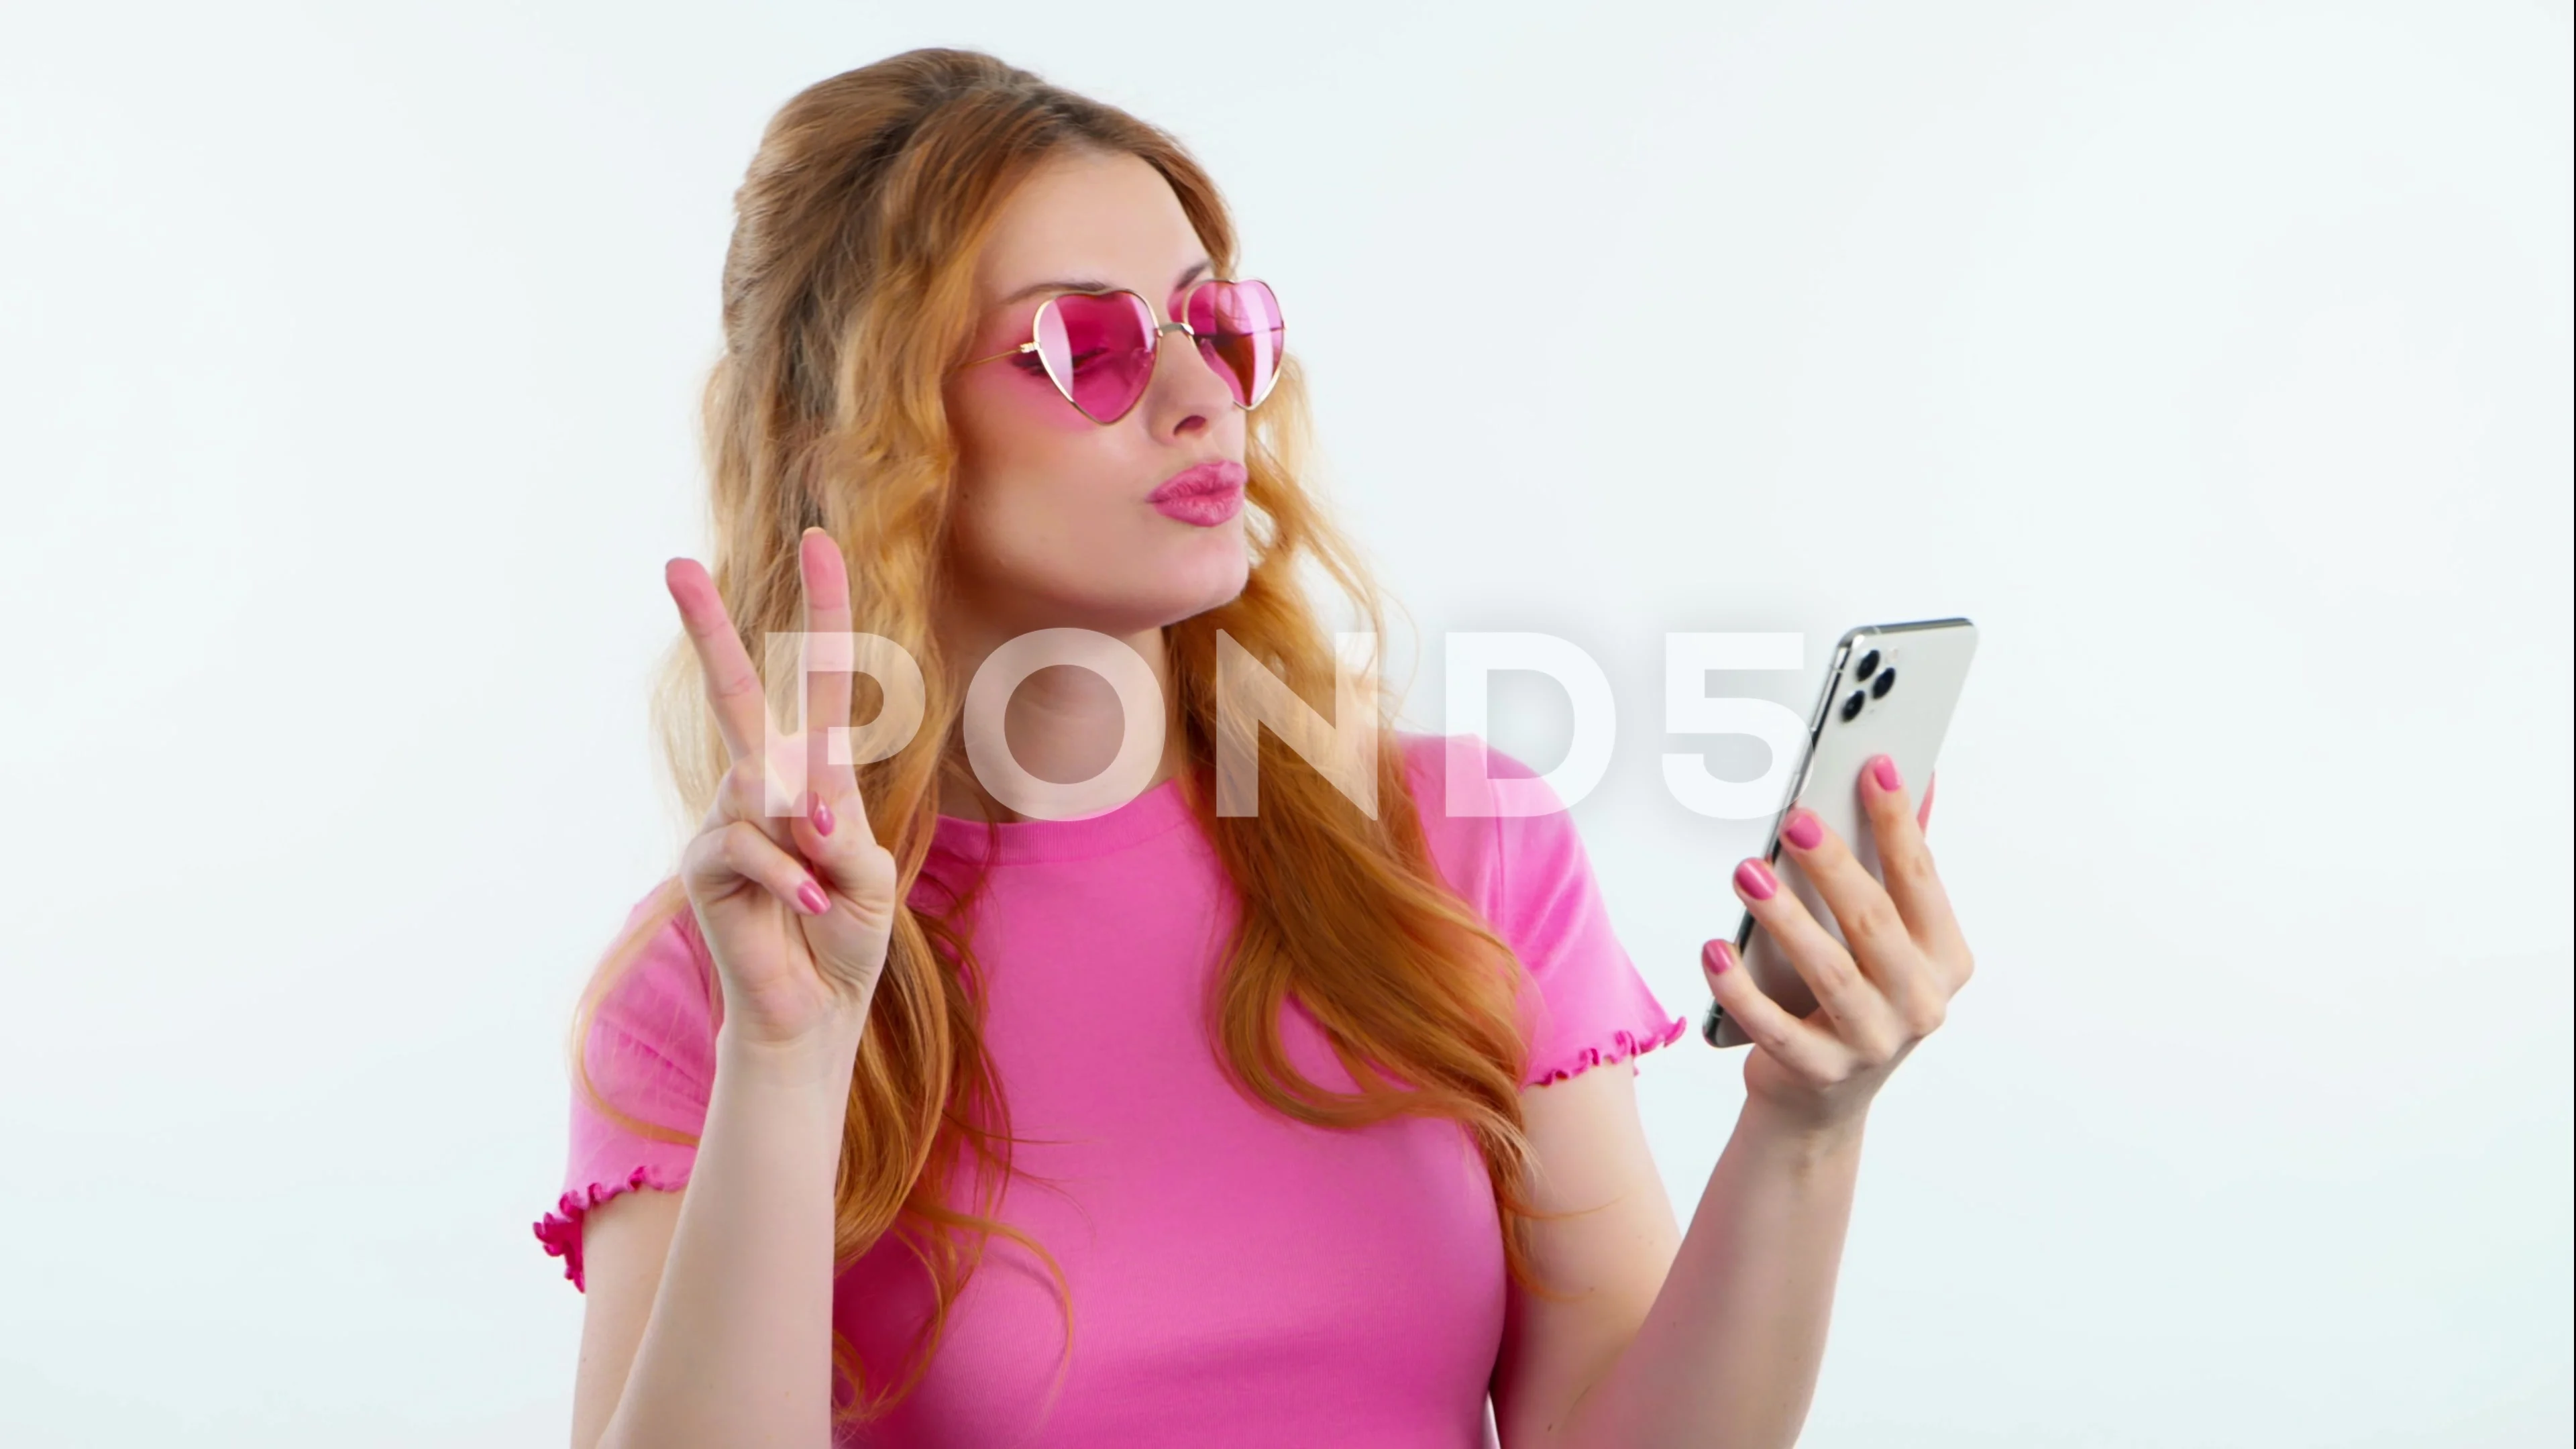 Baddie Selfie Pose Ideas - Lemon8 Search